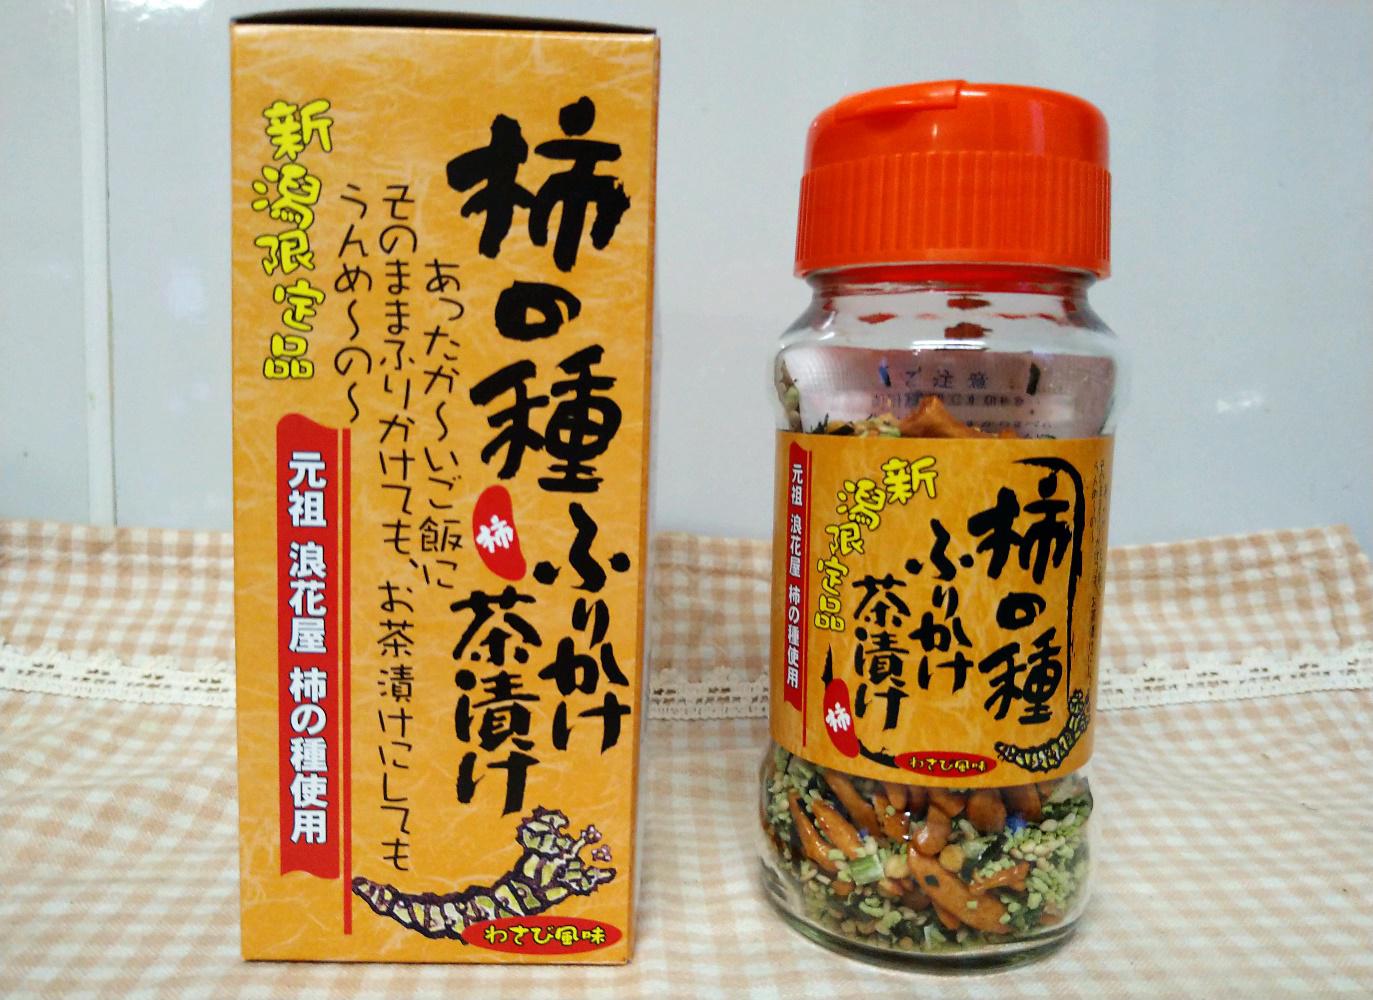 「柿の種ふりかけ茶漬け」って知っていますか？ 新潟県民がレビューします。